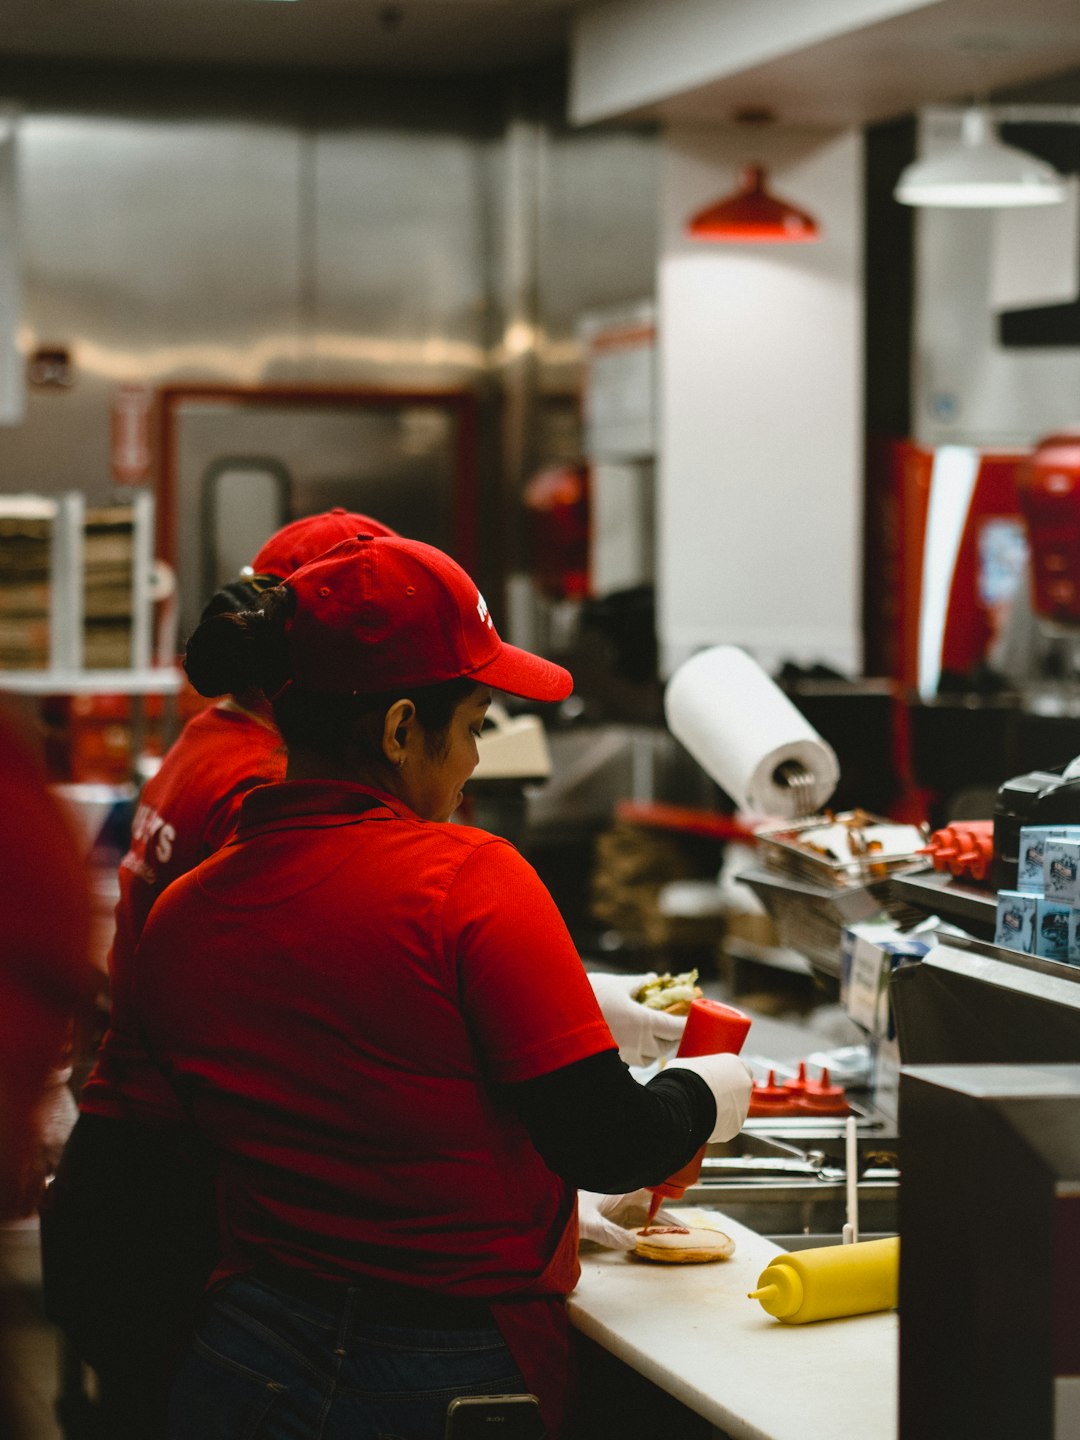 woman in red cap and shirt preparing food